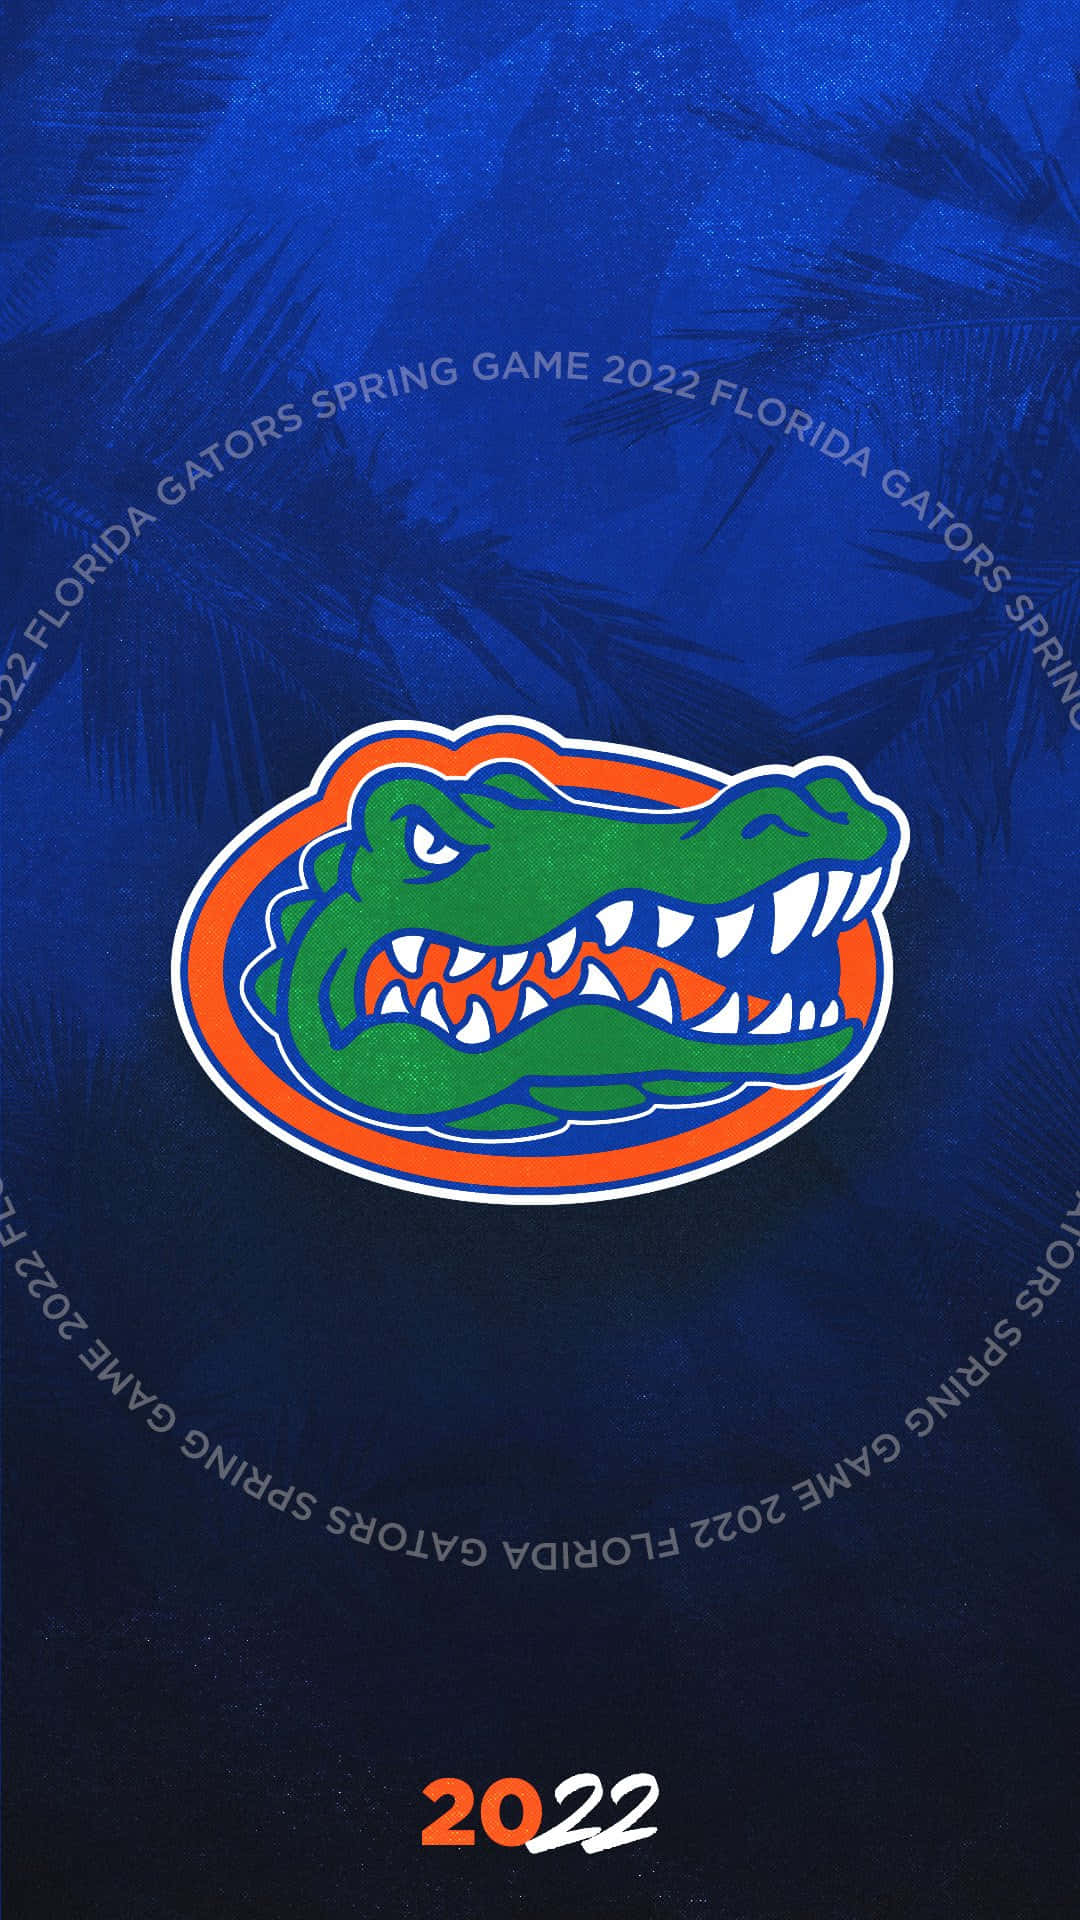 Florida Gators 2020 Spring Game Logo Wallpaper